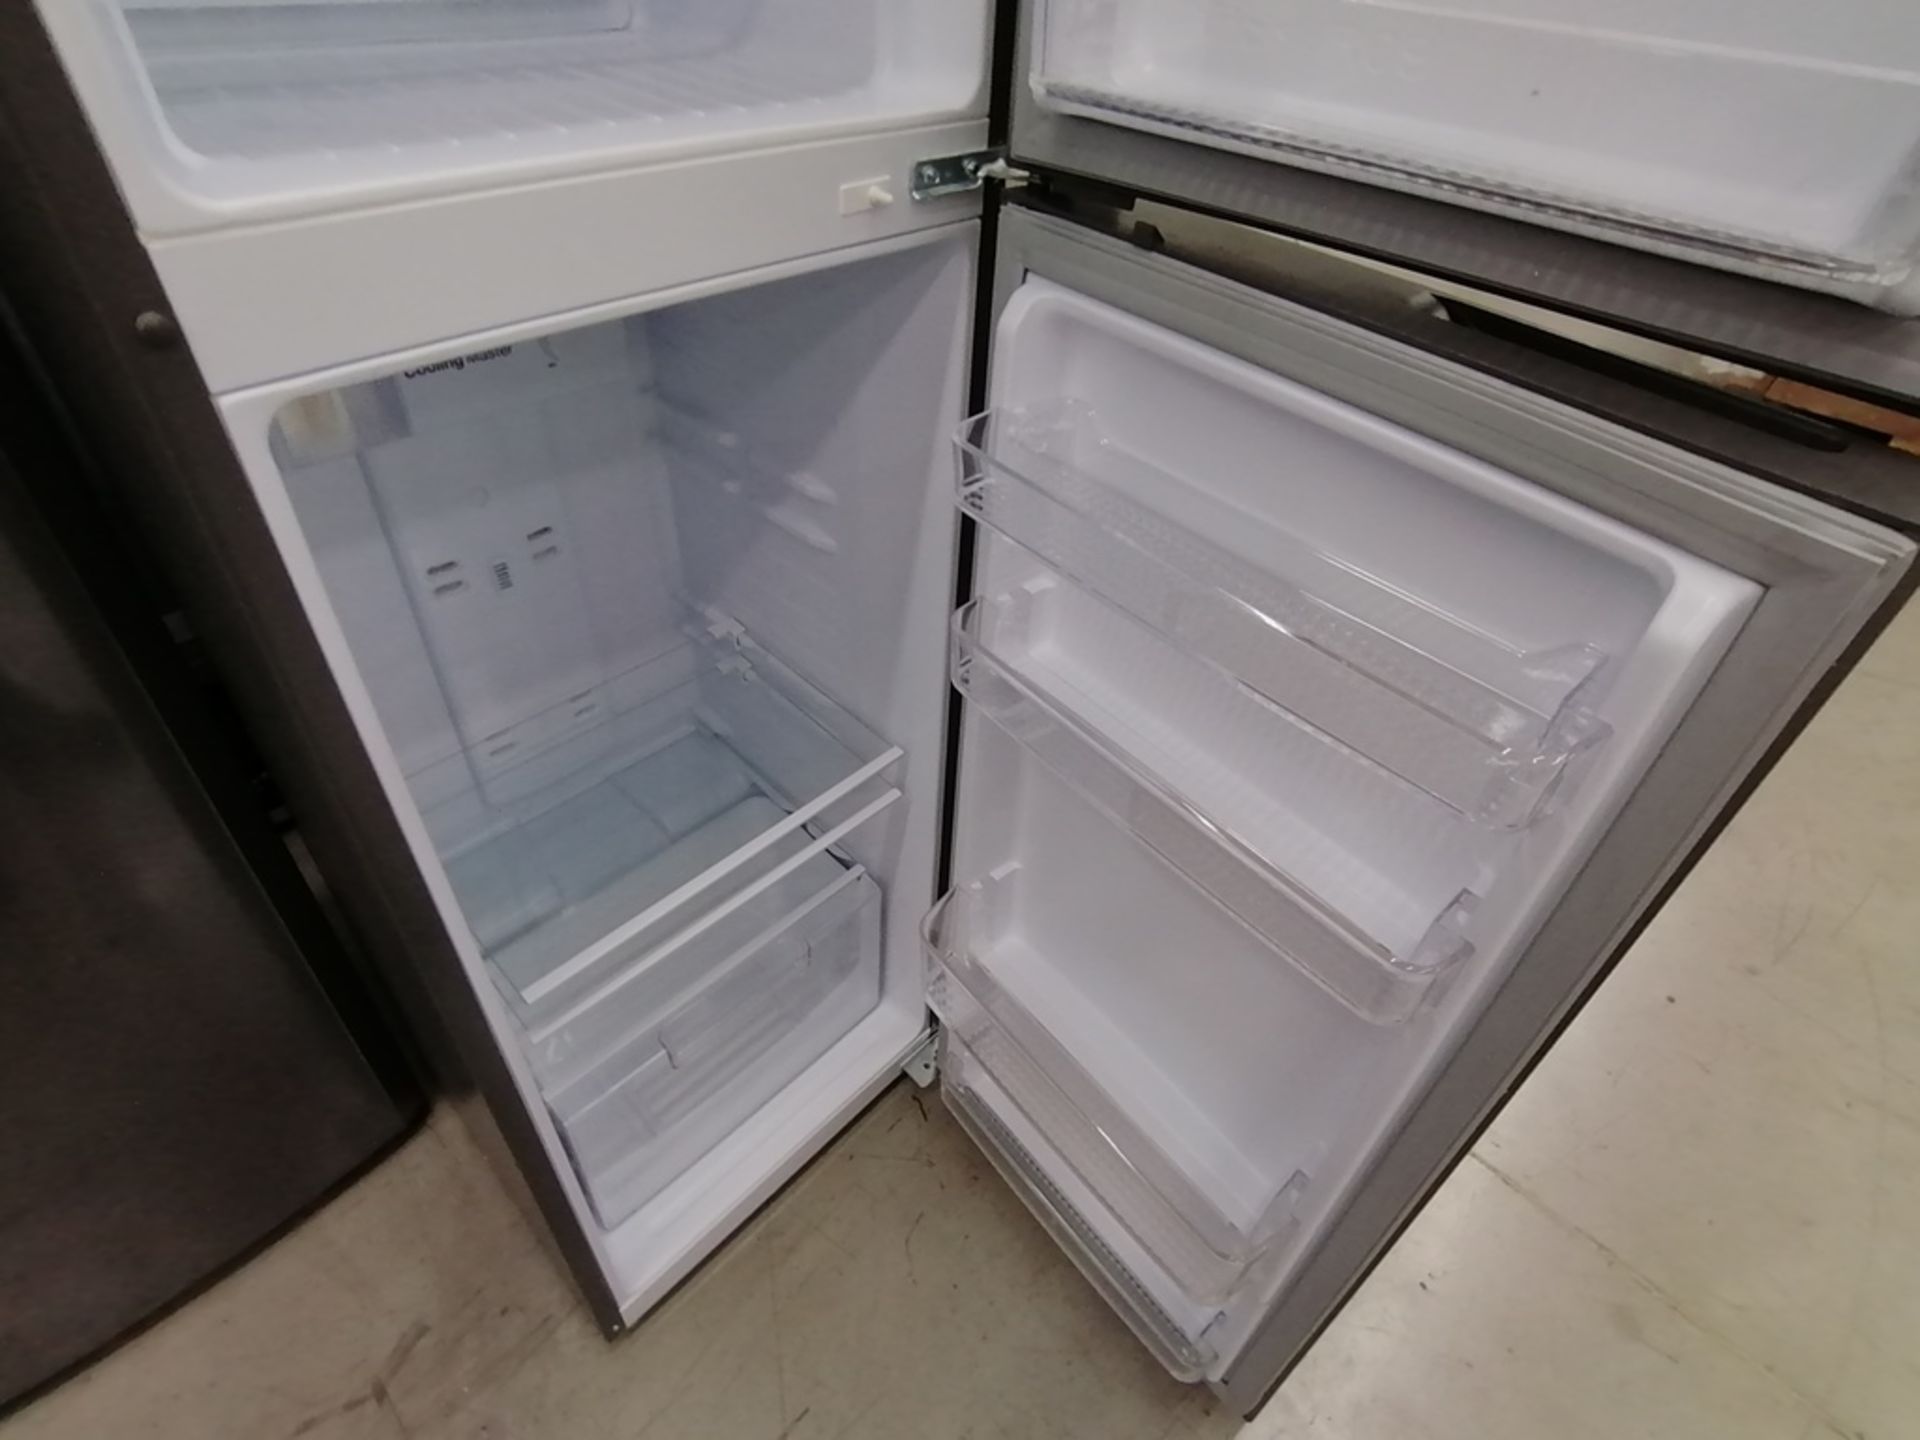 Lote de 2 refrigeradores incluye: 1 Refrigerador, Marca Mabe, Modelo RMA1025VNX, Serie 2110B623189, - Image 8 of 17